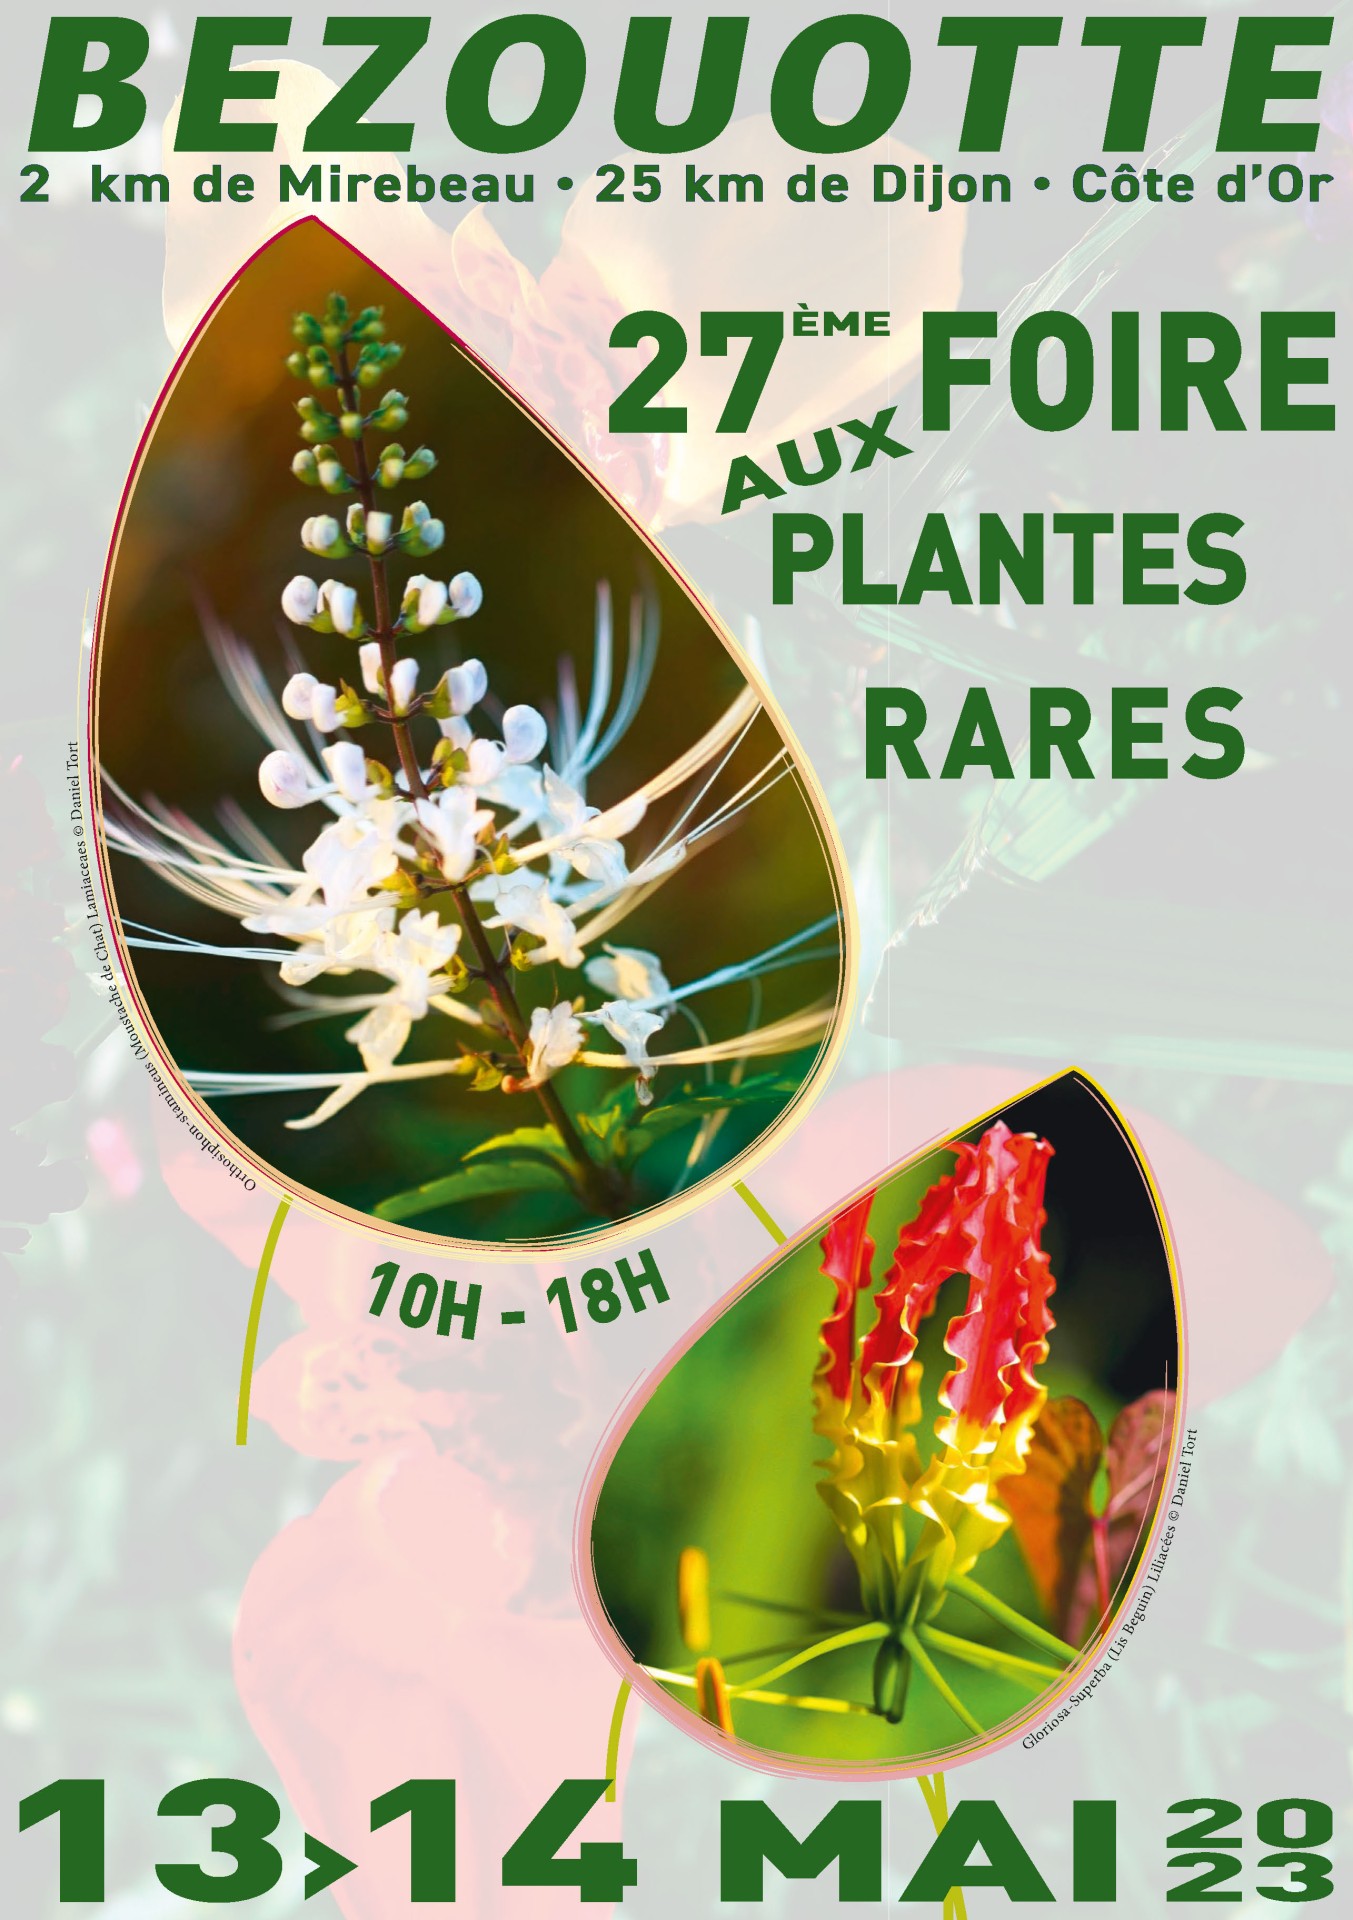 27e Foire aux plantes rares de Bézouotte